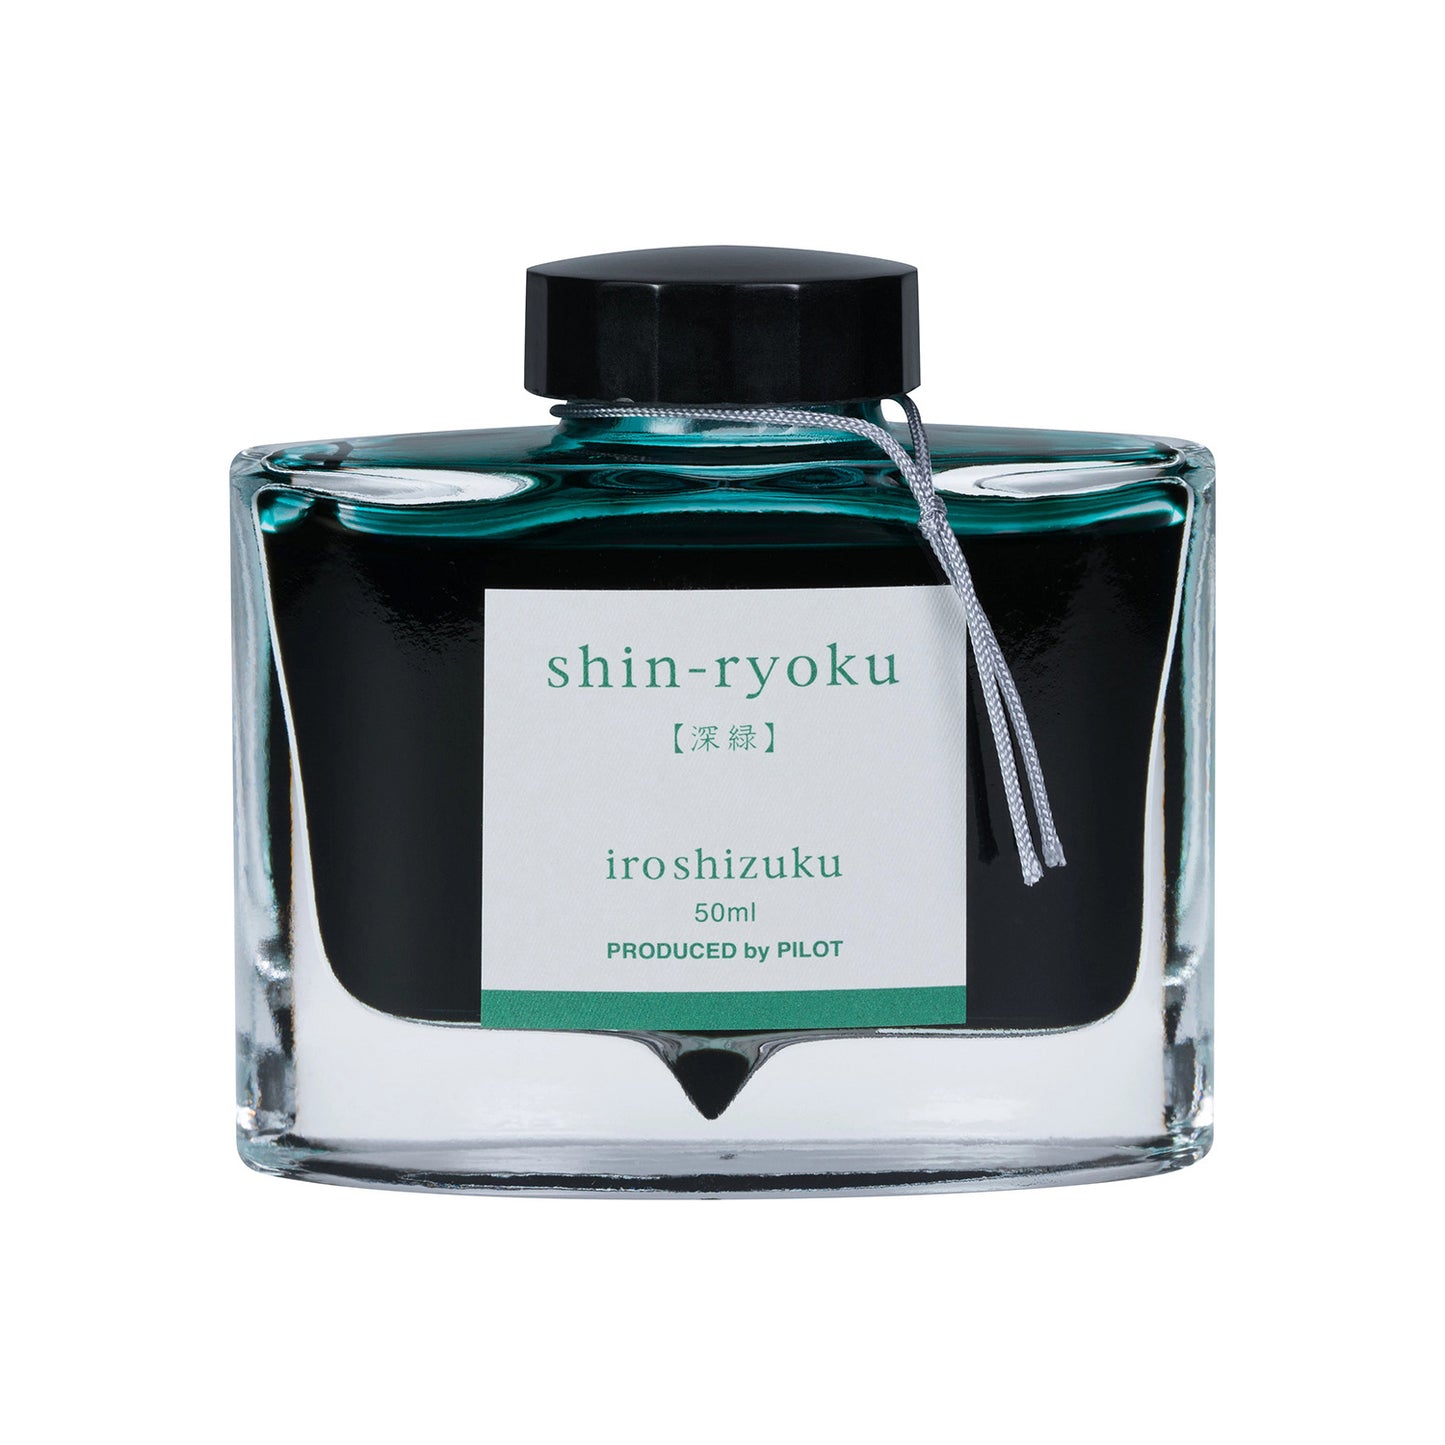 Pilot Iroshizuku Fountain Pen Ink - Shin-ryoku (Forest Green) - 50 ml Bottle